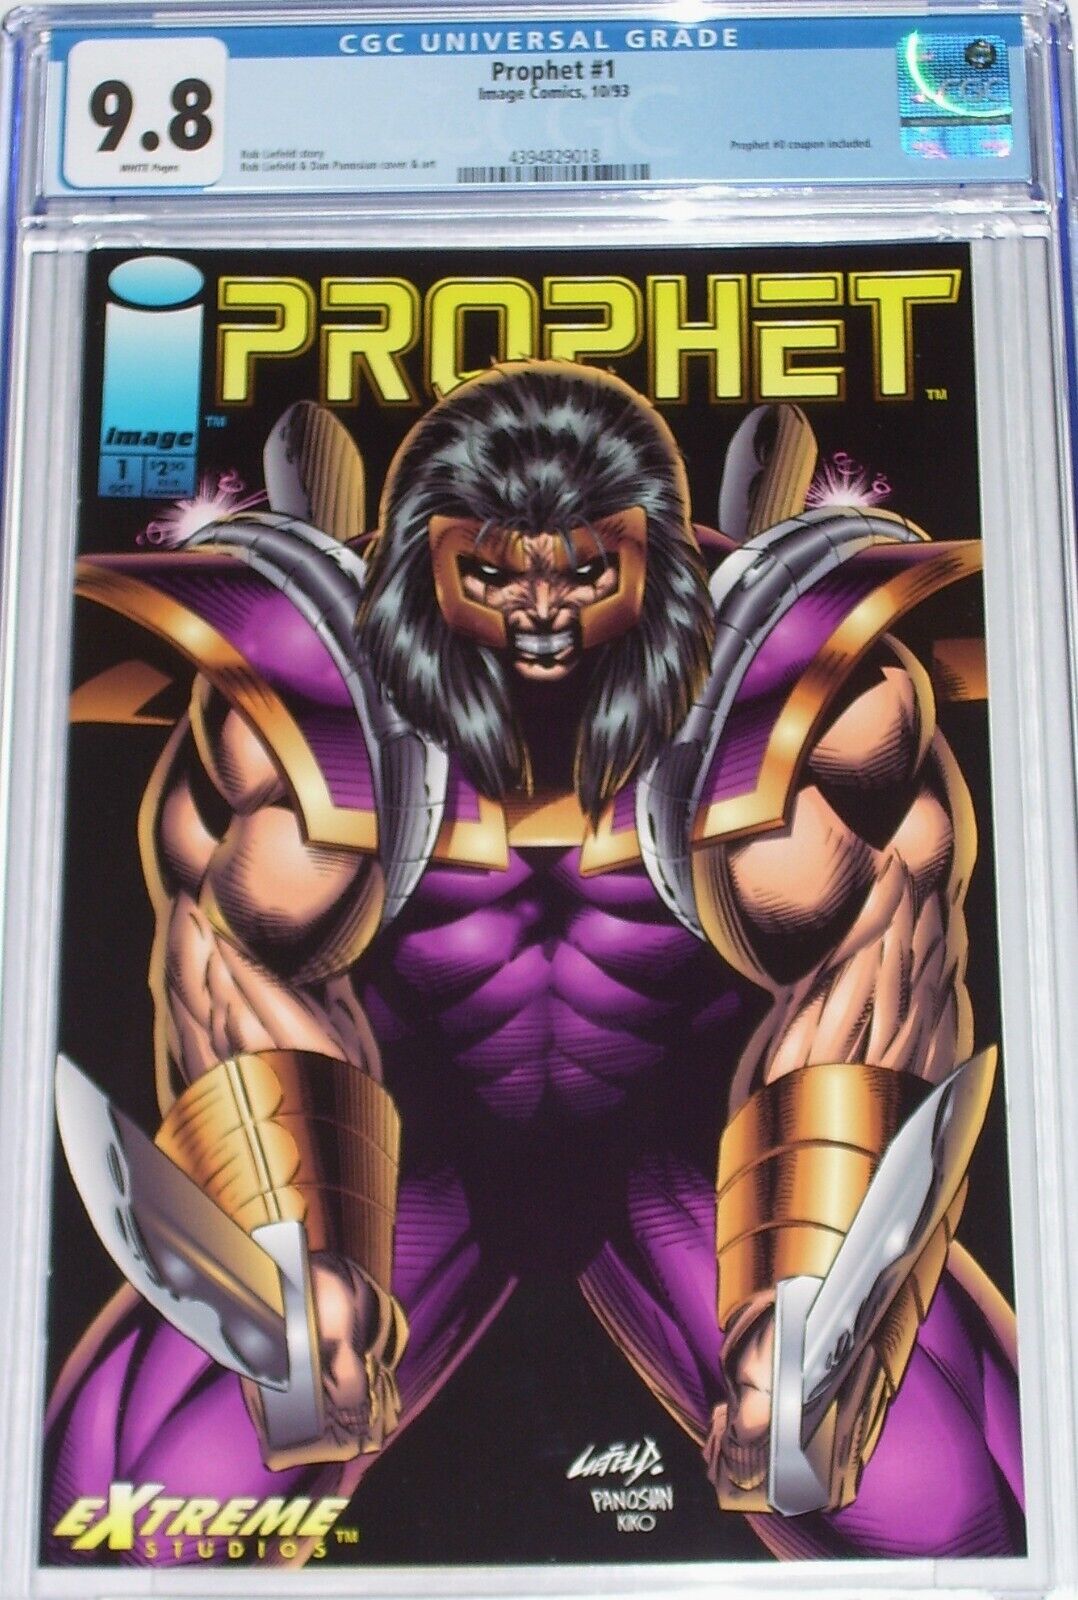 Prophet #1 CGC 9.8 Oct 1993 Prophet #0 coupon included